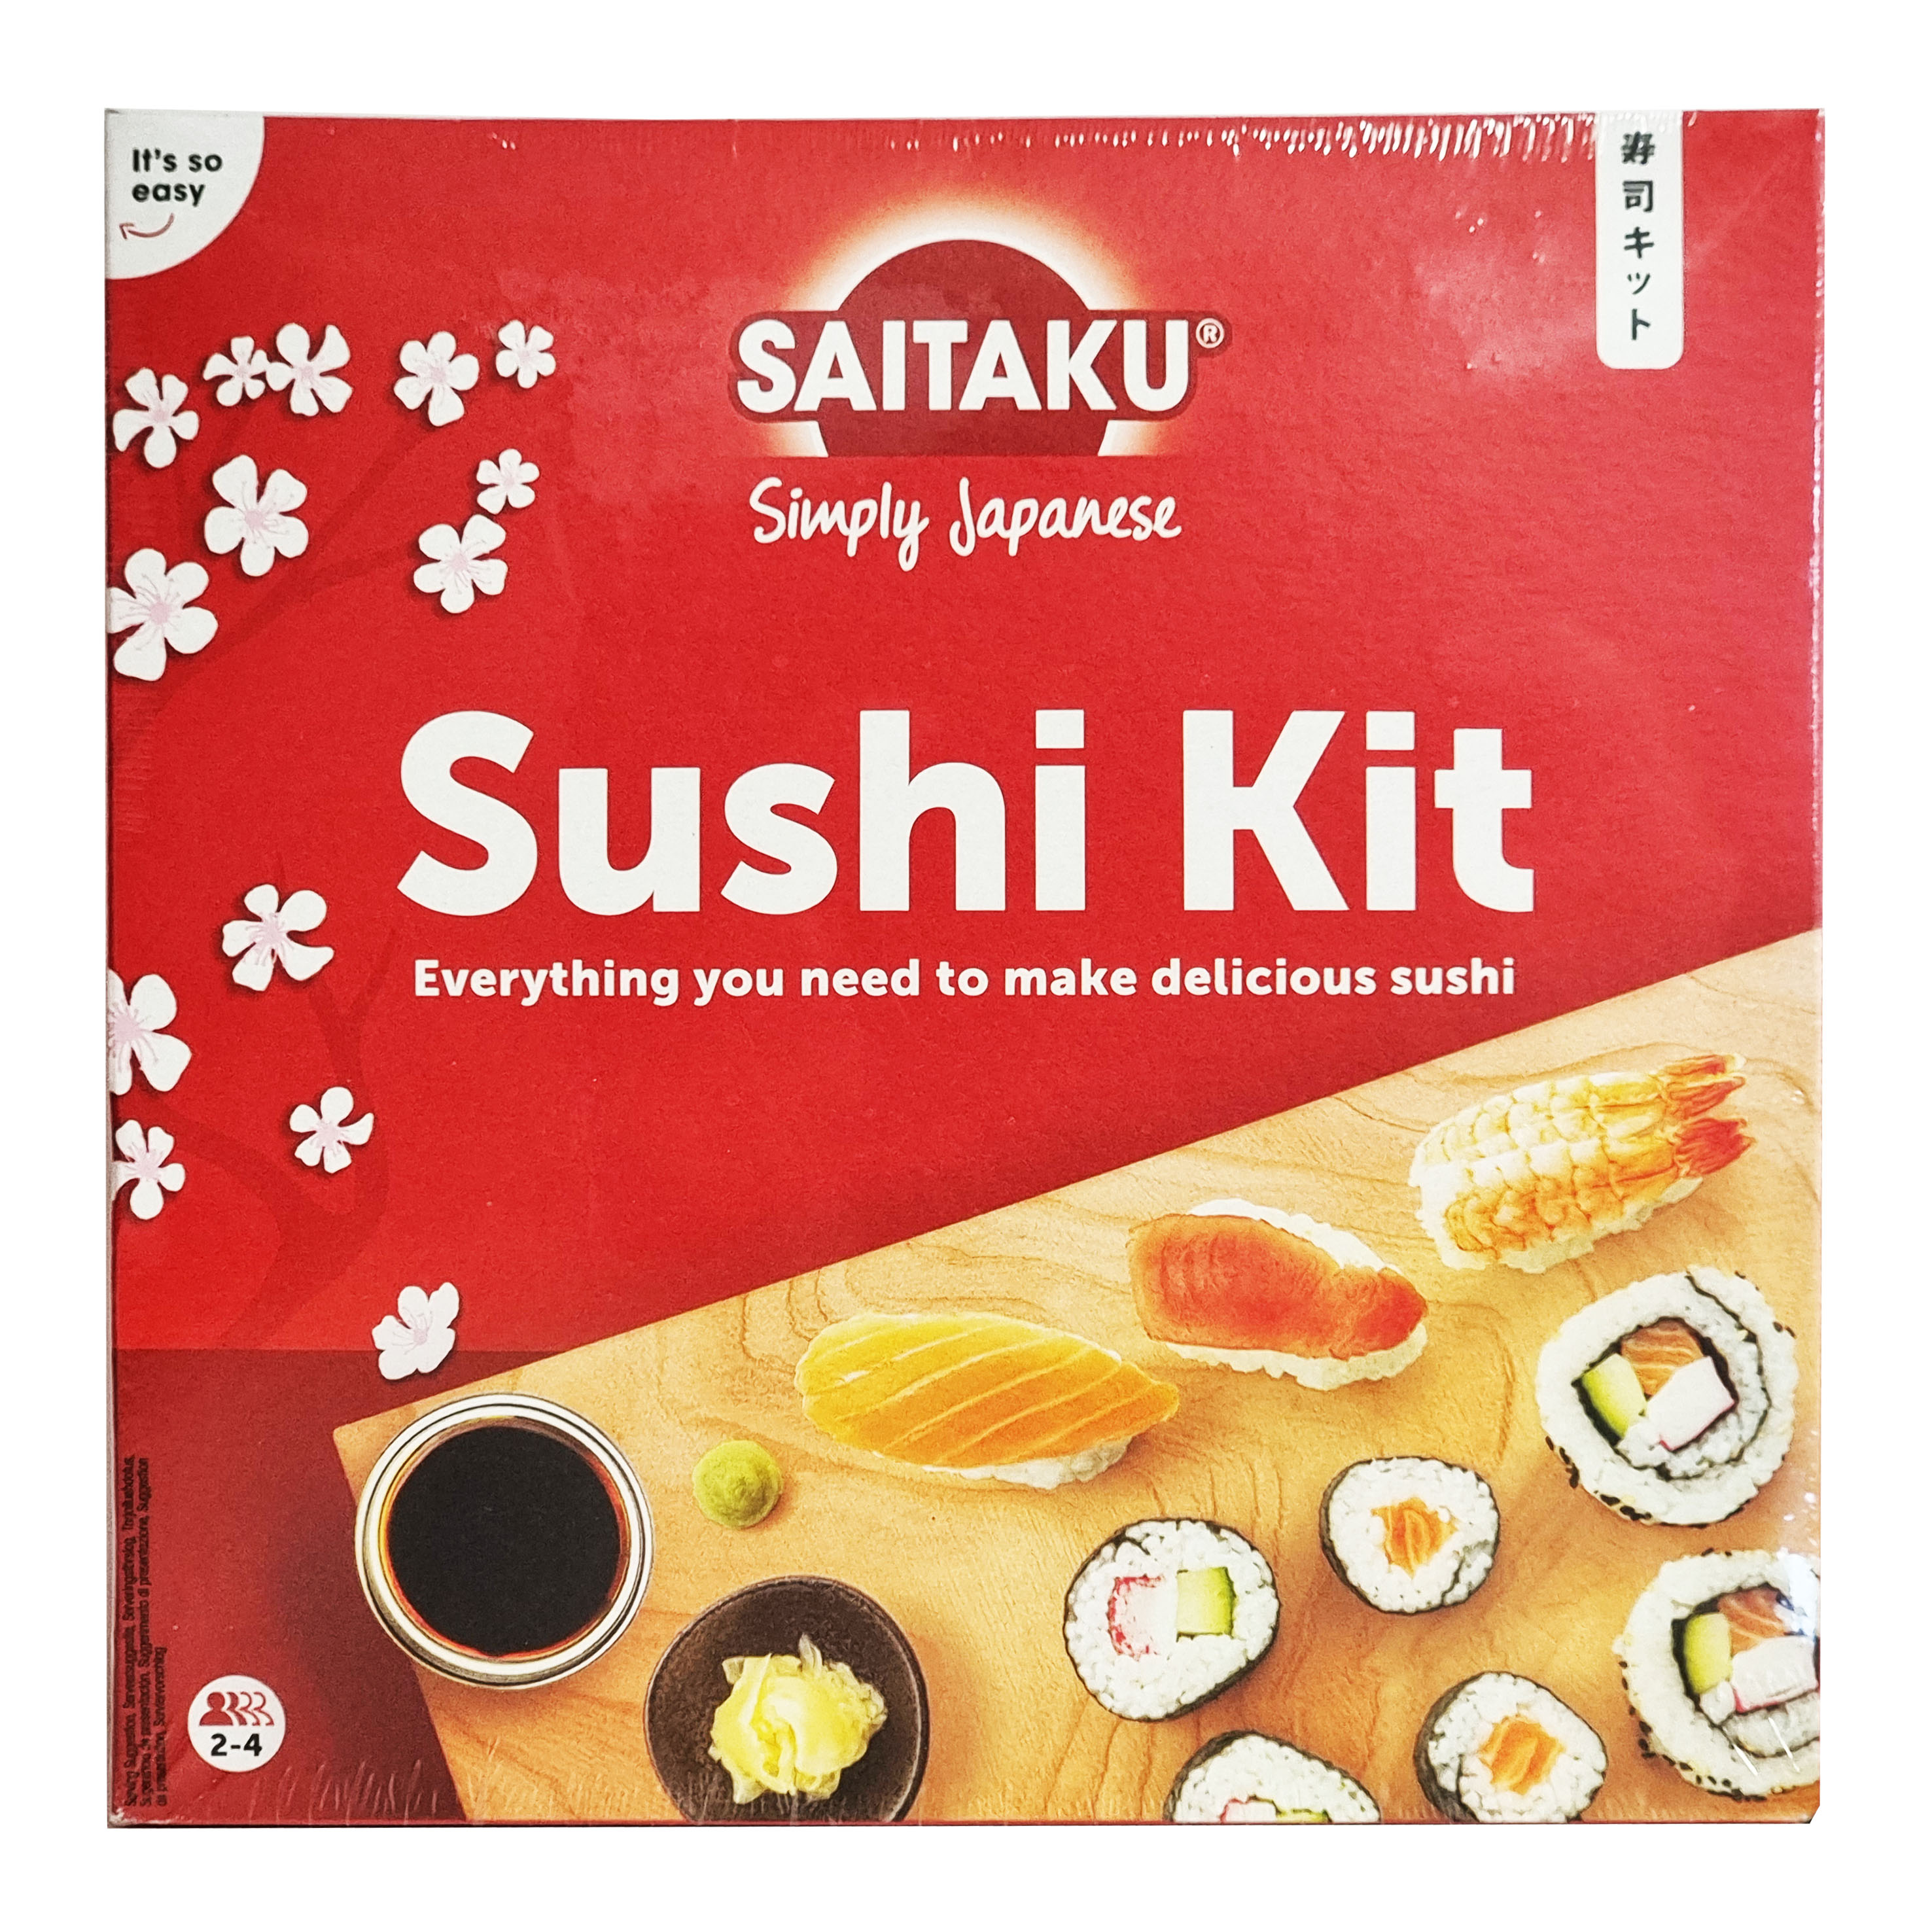 Saitaku sushi kit